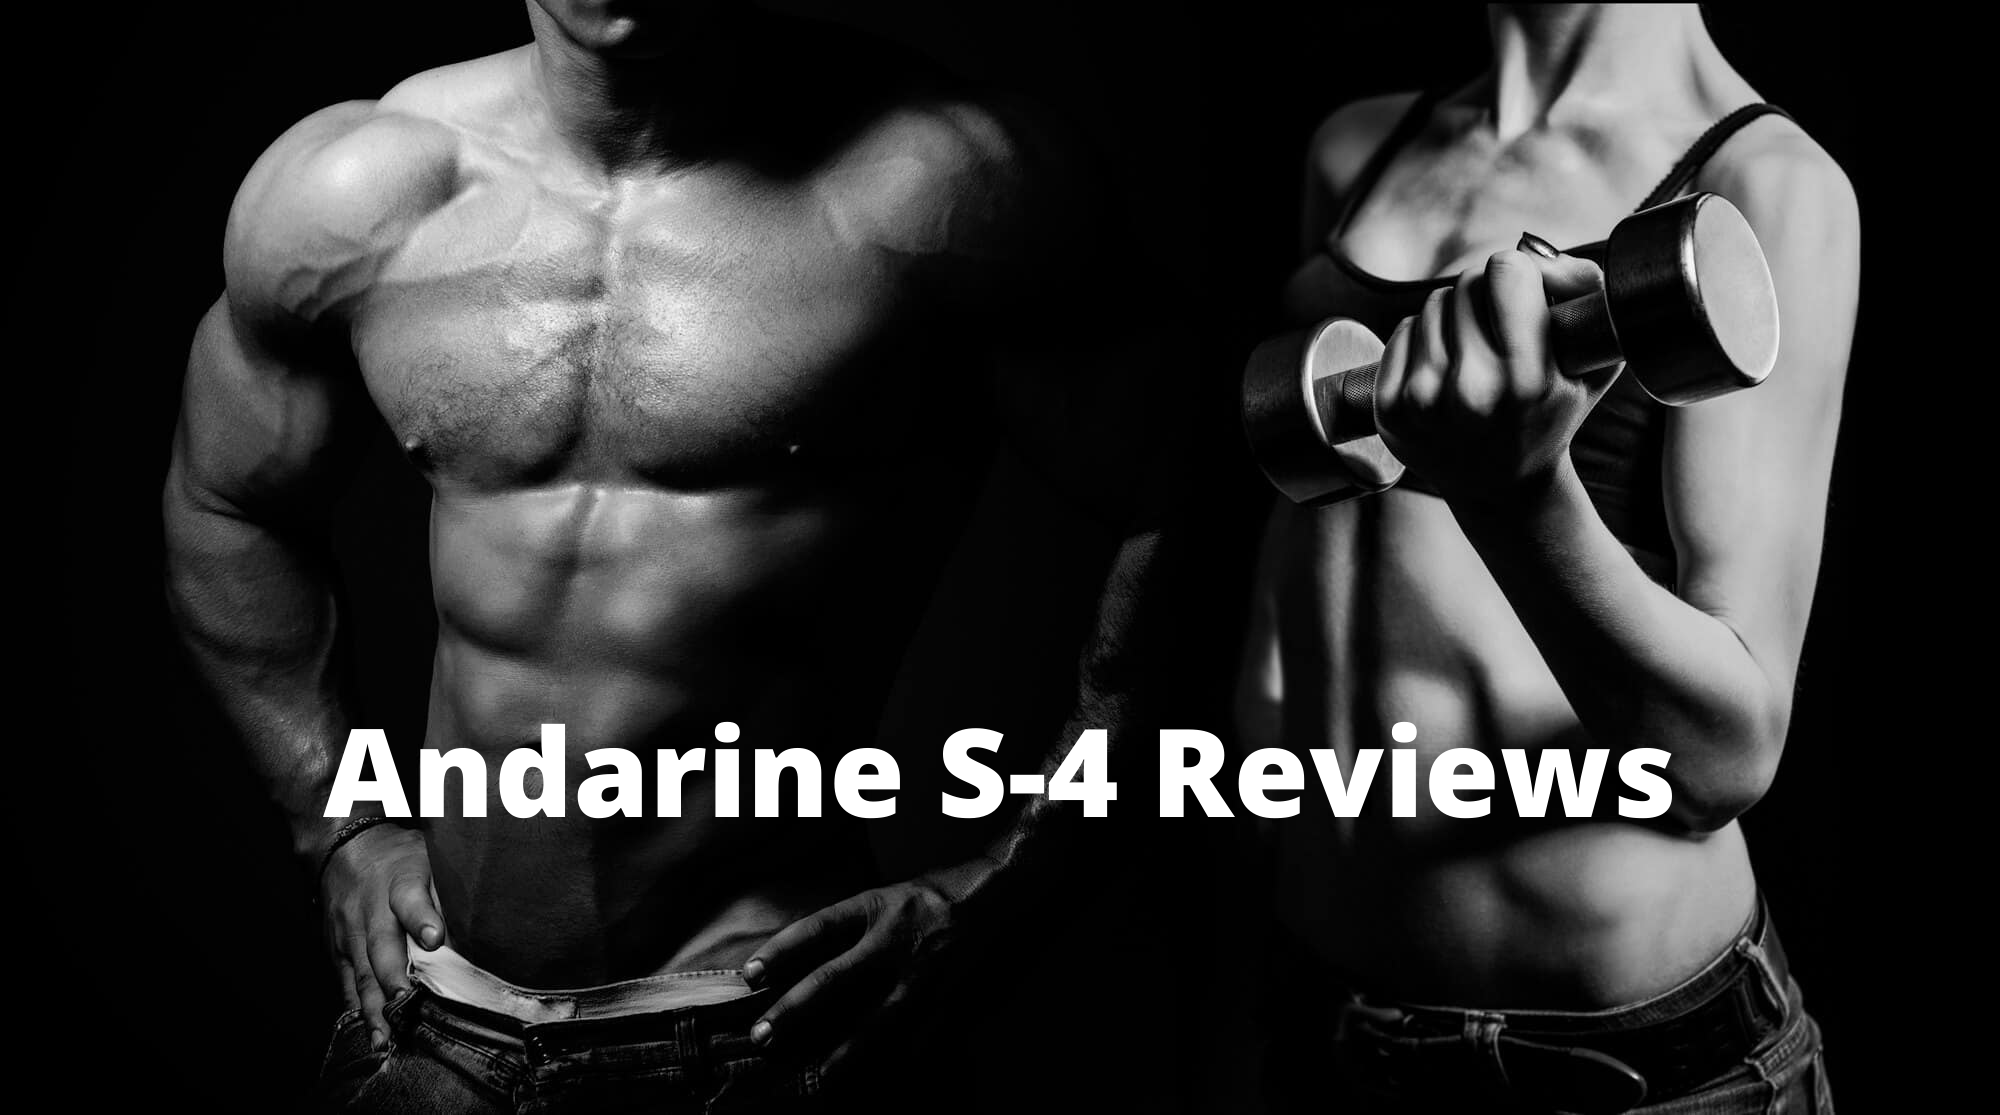 Andarine S-4 Reviews